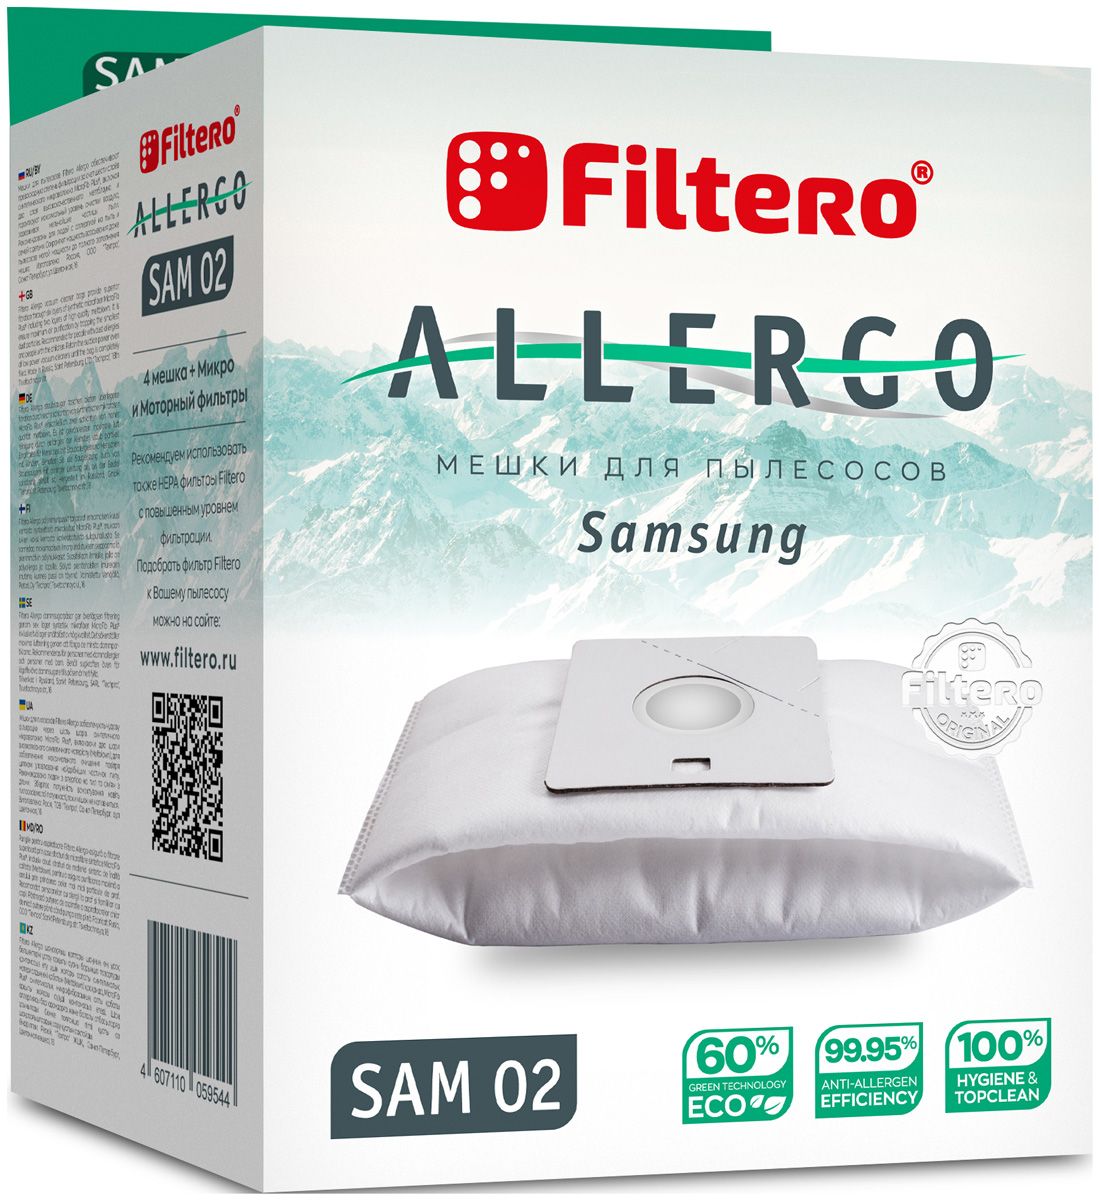 пылесборники filtero fls 01 s bag allergo 4 шт моторный фильтр и микрофильтр Пылесборники Filtero SAM 02 Allergo 4 шт. + моторный фильтр и микрофильтр